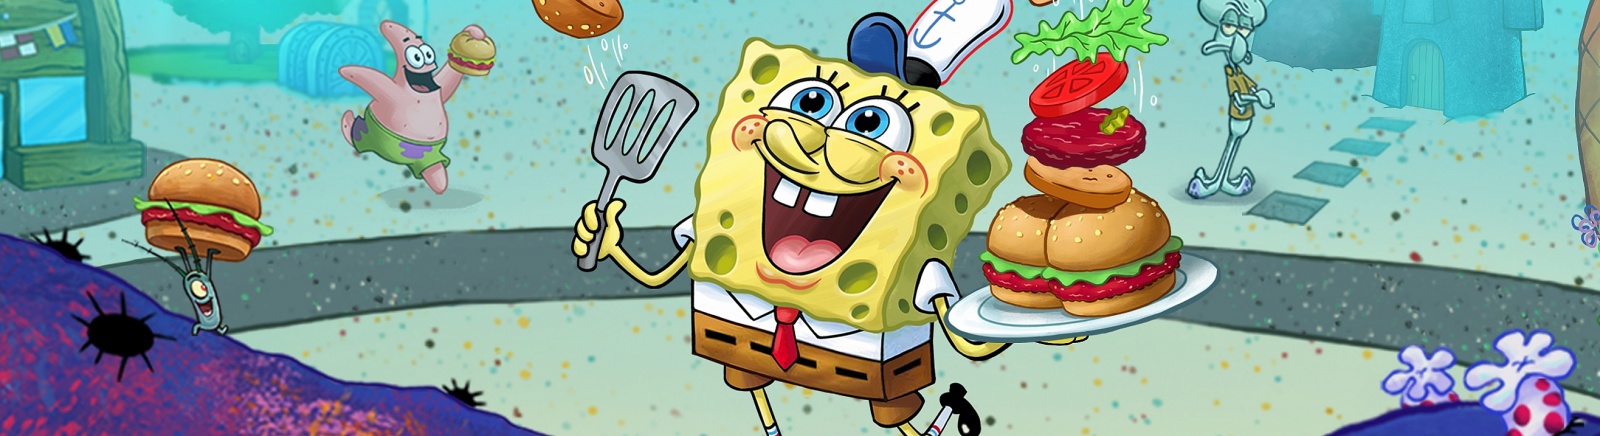 Дата выхода SpongeBob: Krusty Cook-Off (Губка Боб: Кулинарный поединок)  на iOS и Android в России и во всем мире